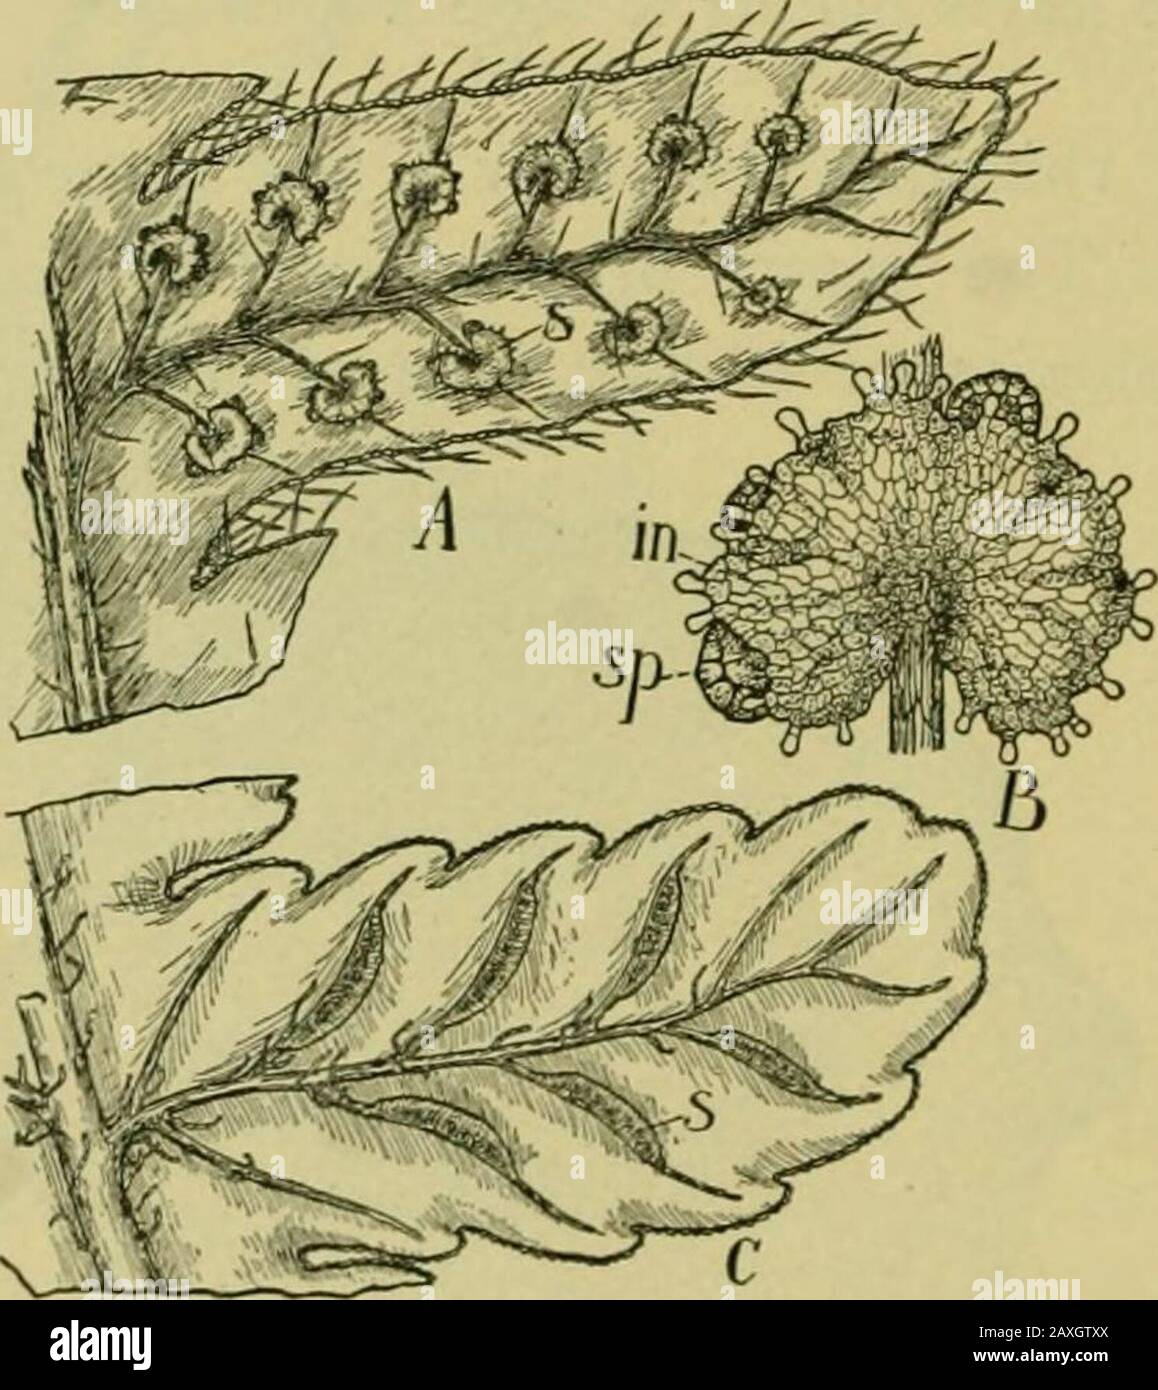 Nature et développement des plantes . ; cr,région corticale. les ouvertures de certains districts tropicaux sont les fougères arborescentes avec des éerecttiges d'apparence de palmiers qui lèvent leurs grandes fougères de 30 à 50 pieds dans l'air. Les faisceaux vasculaires sont de 294 SPORANGES de FILICALES de type concentrique (Fig. 221) et forment généralement un filet creux dans la tige (Fig. 220, x). Certaines cellules du cortex andpith sont souvent modifiées en renforçant les cellules du stéréome (Fig. 221, st). Les racines se trouvent près de la base des feuilles, et l'intérieur des fougères de l'arbre forme une couche épaisse semblable à un tapis sur les tiges. Ils sont d'origine Banque D'Images